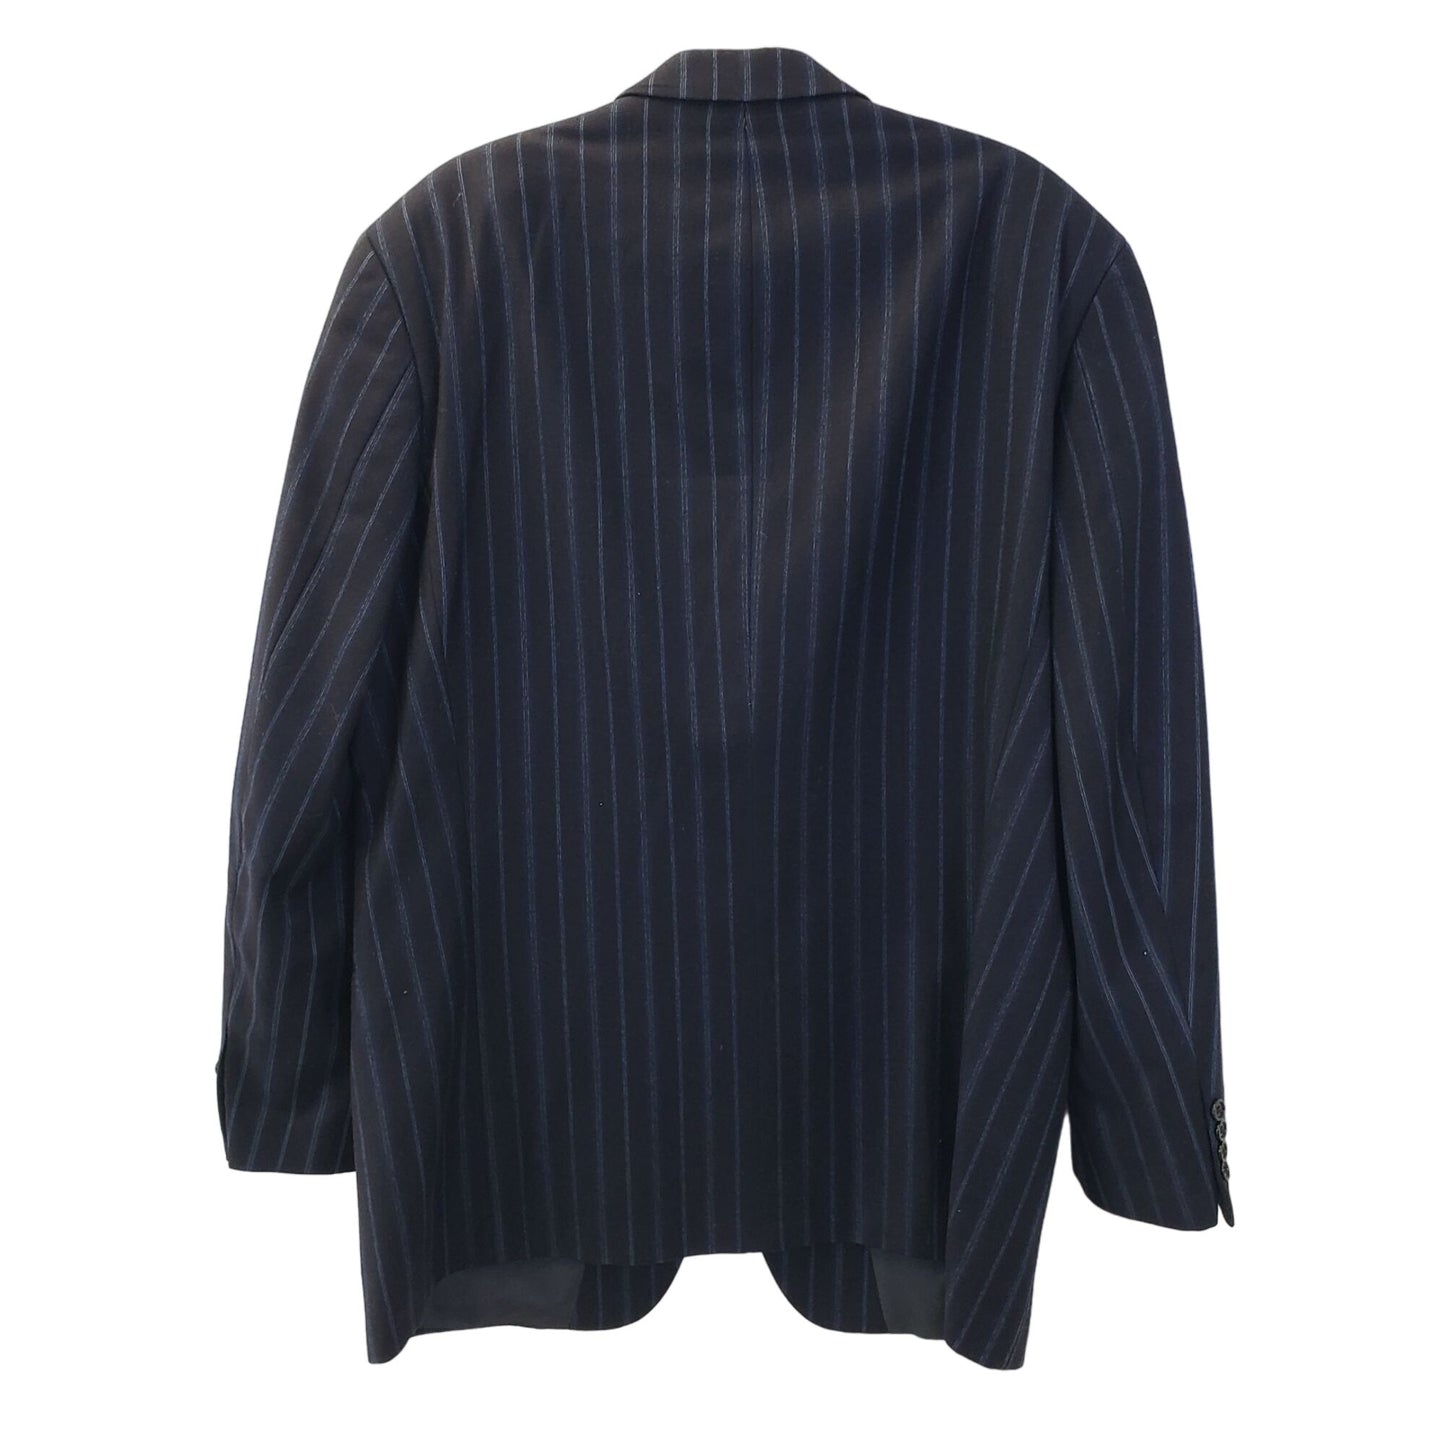 BOSS Hugo Boss Wool & Cashmere Blend Striped 3 Button Sport Coat Size 44R